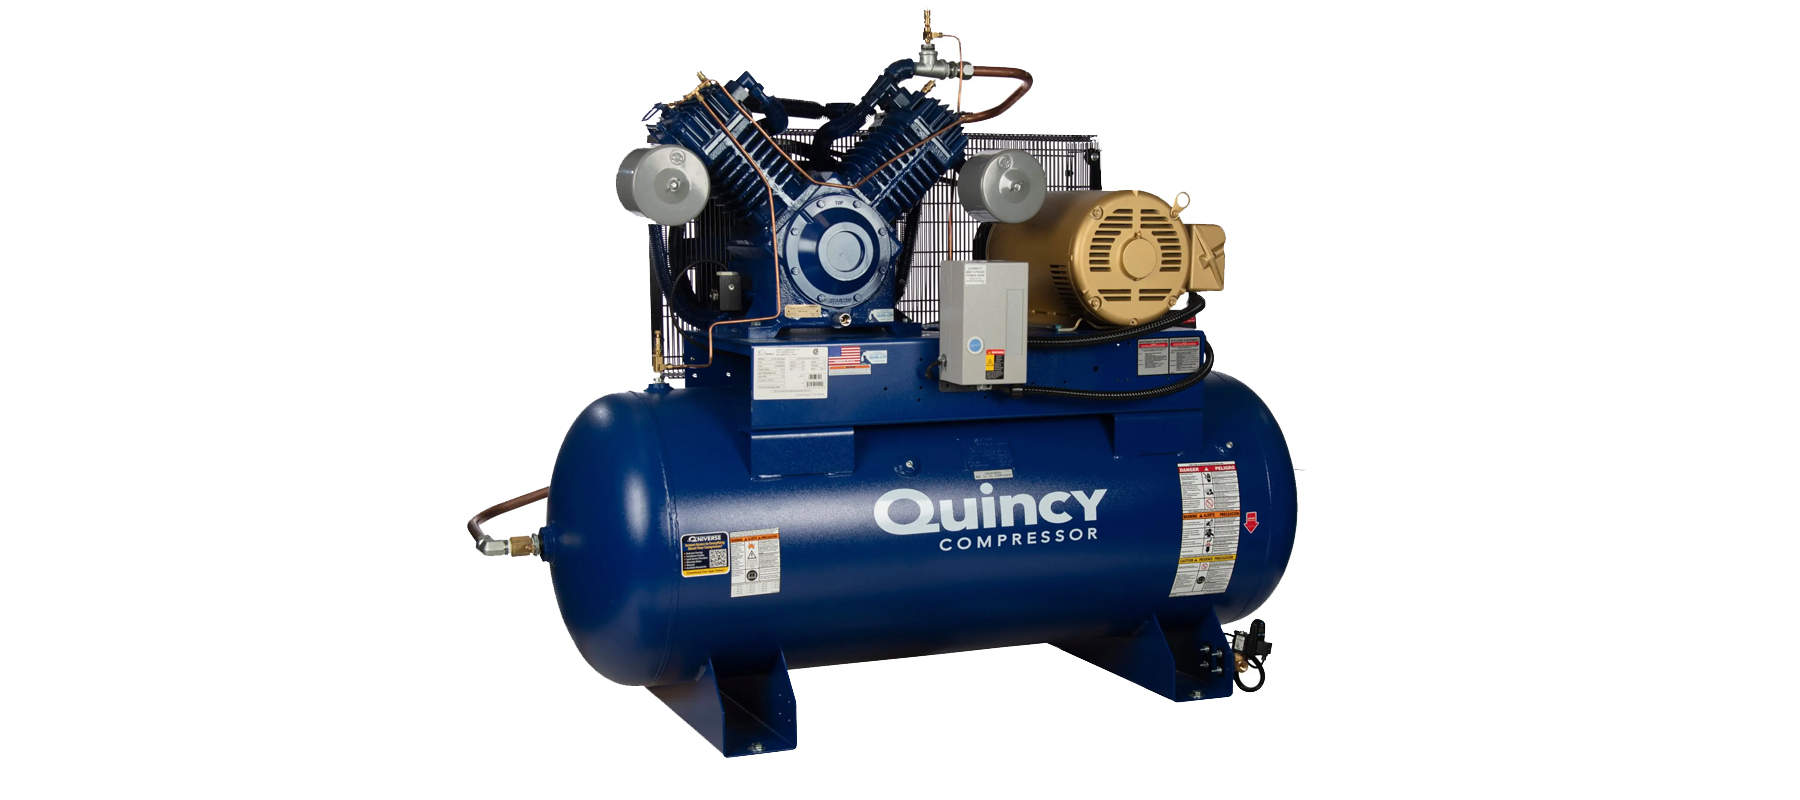 60 Gallon Quincy Air Compressor